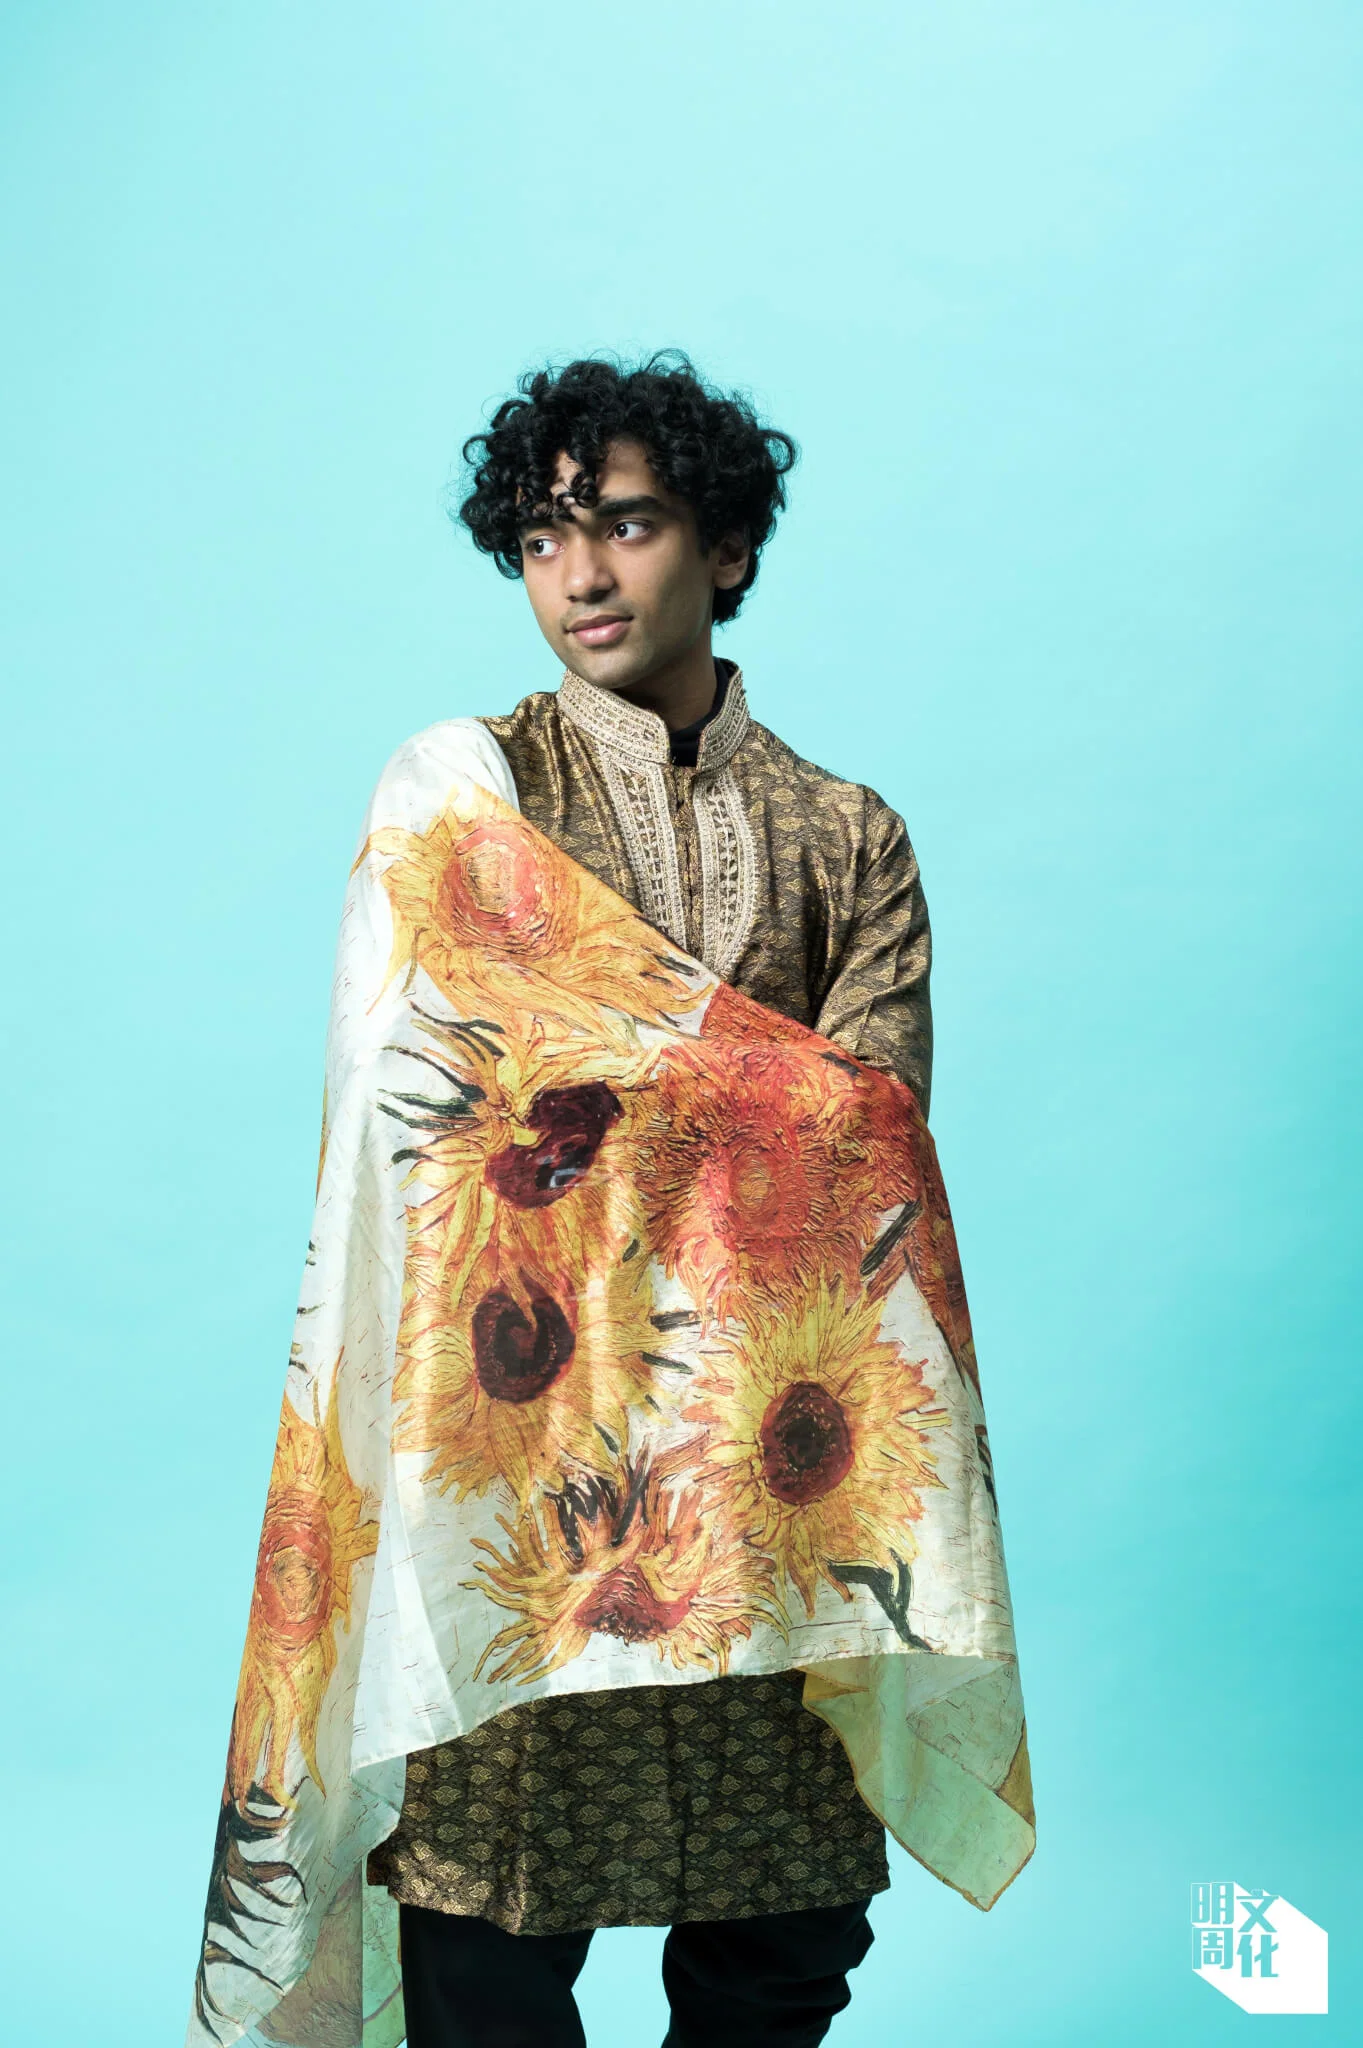 印有梵高畫作《向日葵》的圍巾是Yufuf從荷蘭交流回港後，送給媽媽的禮物。溫暖色系的圍巾正好配襯同色系的傳統服飾Kurta。